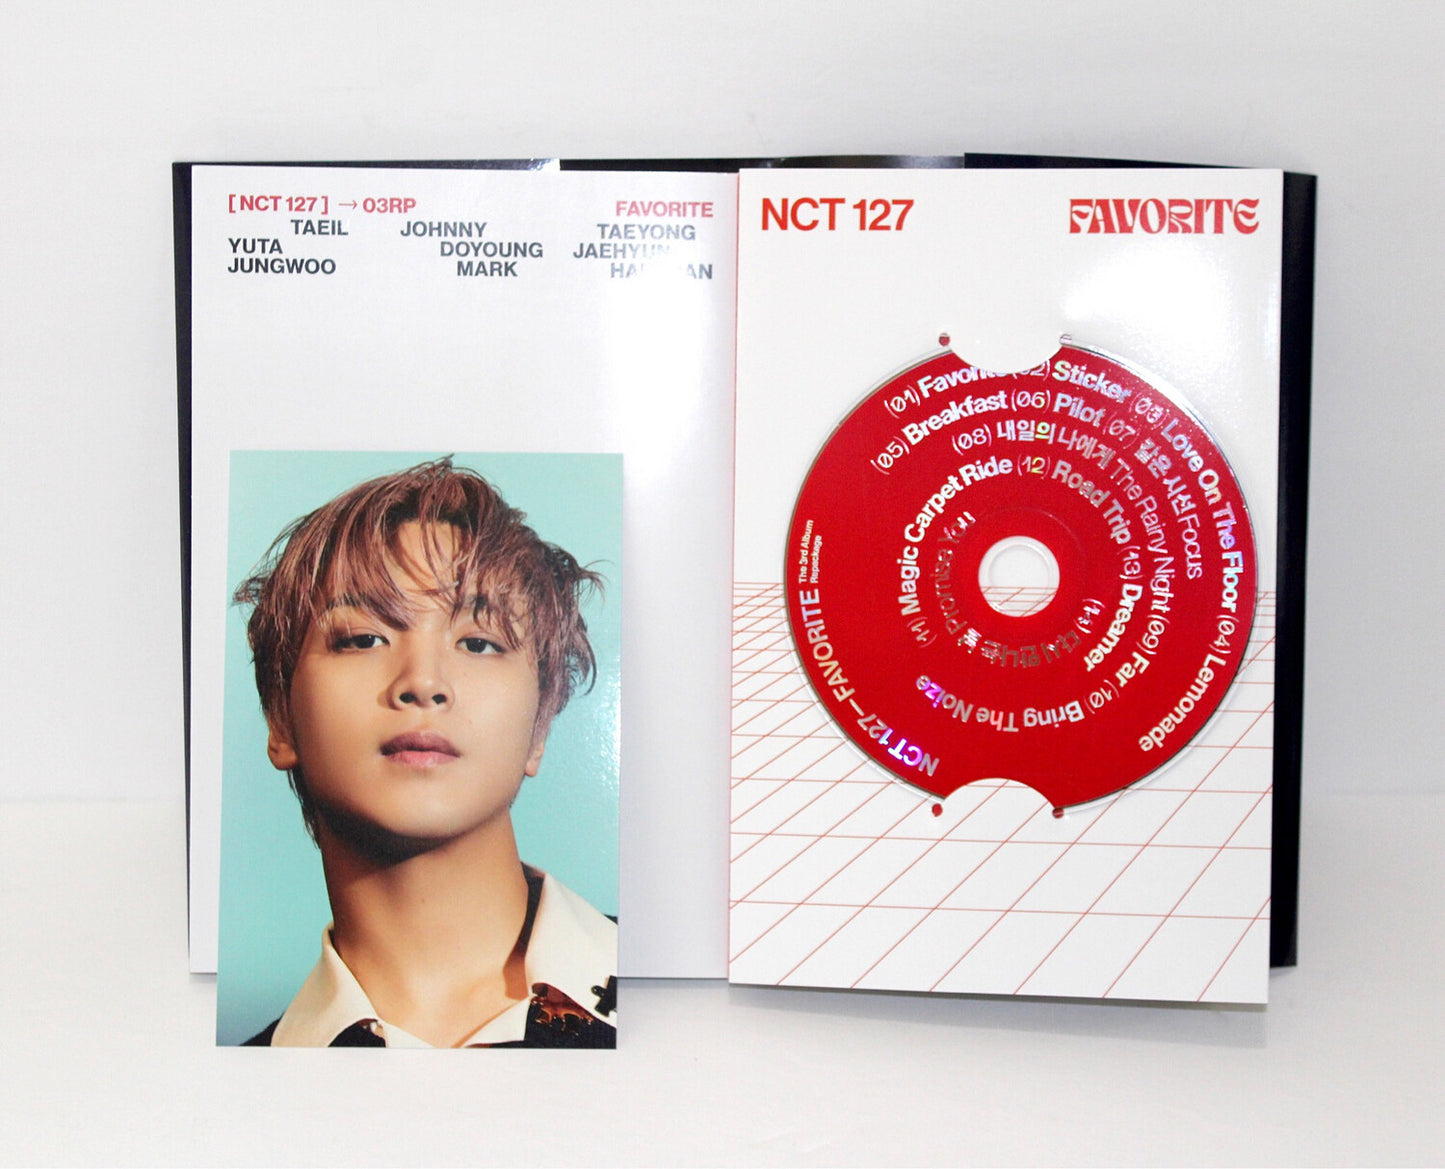 Reempaquetado del tercer álbum de NCT 127: Favorito | Versión clásica.